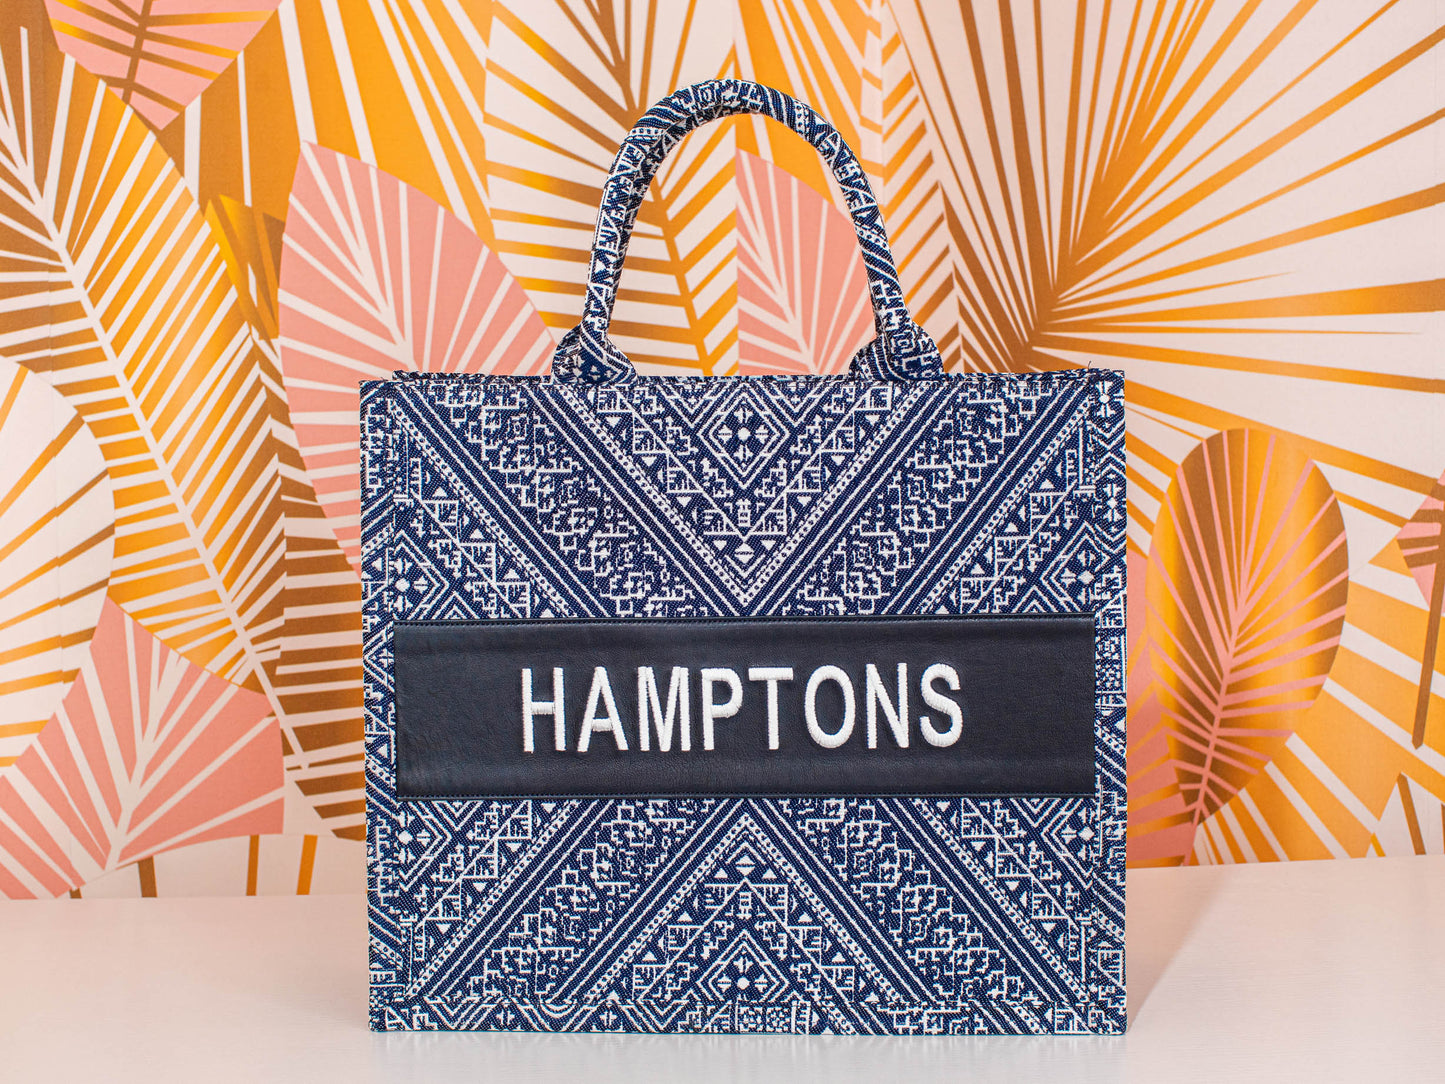 Large Tote CD Hamptons - Premium Bag from Marina St. Barth - Just $197.50! Shop now at Marina St Barth